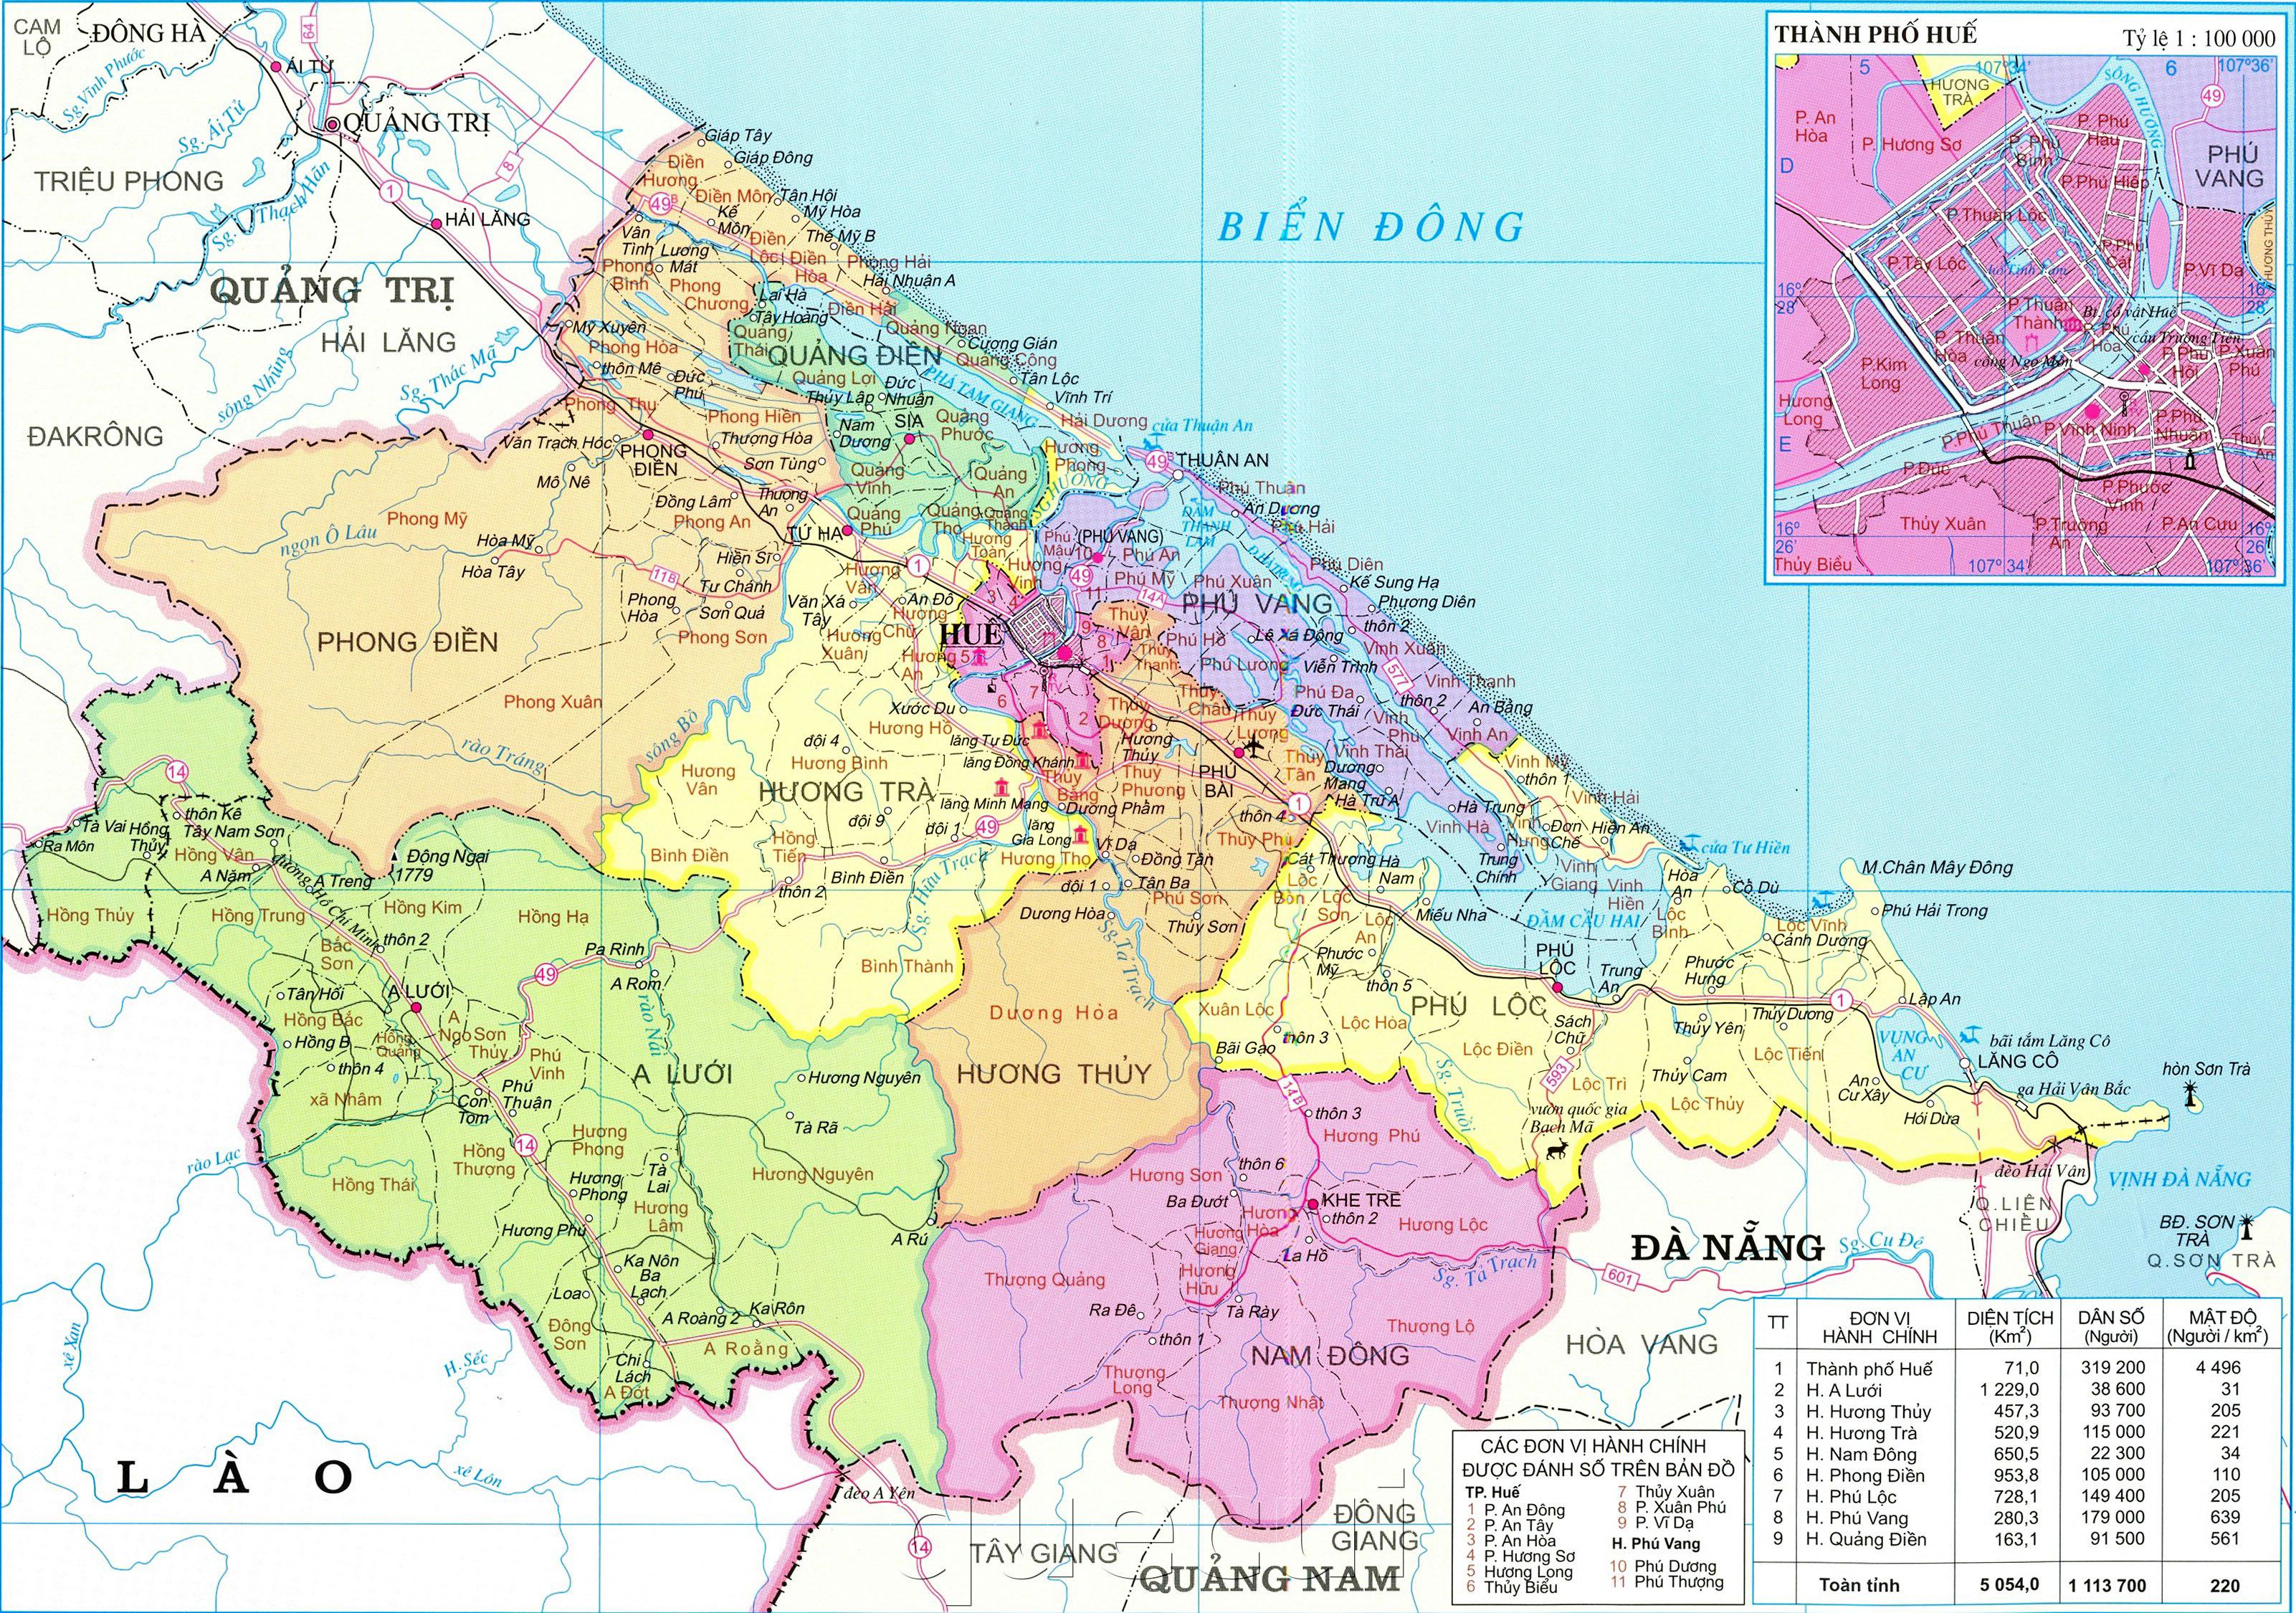 Bản đồ khu vực Thừa Thiên Huế 2024: Trao cho bạn bản đồ khu vực Thừa Thiên Huế 2024 mới nhất, cho phép bạn tìm hiểu chi tiết về địa hình, hệ thống giao thông, địa điểm tham quan và nhiều thông tin khác về thành phố này. Hãy chuẩn bị trang bị cho cuộc phưu lưu của bạn!